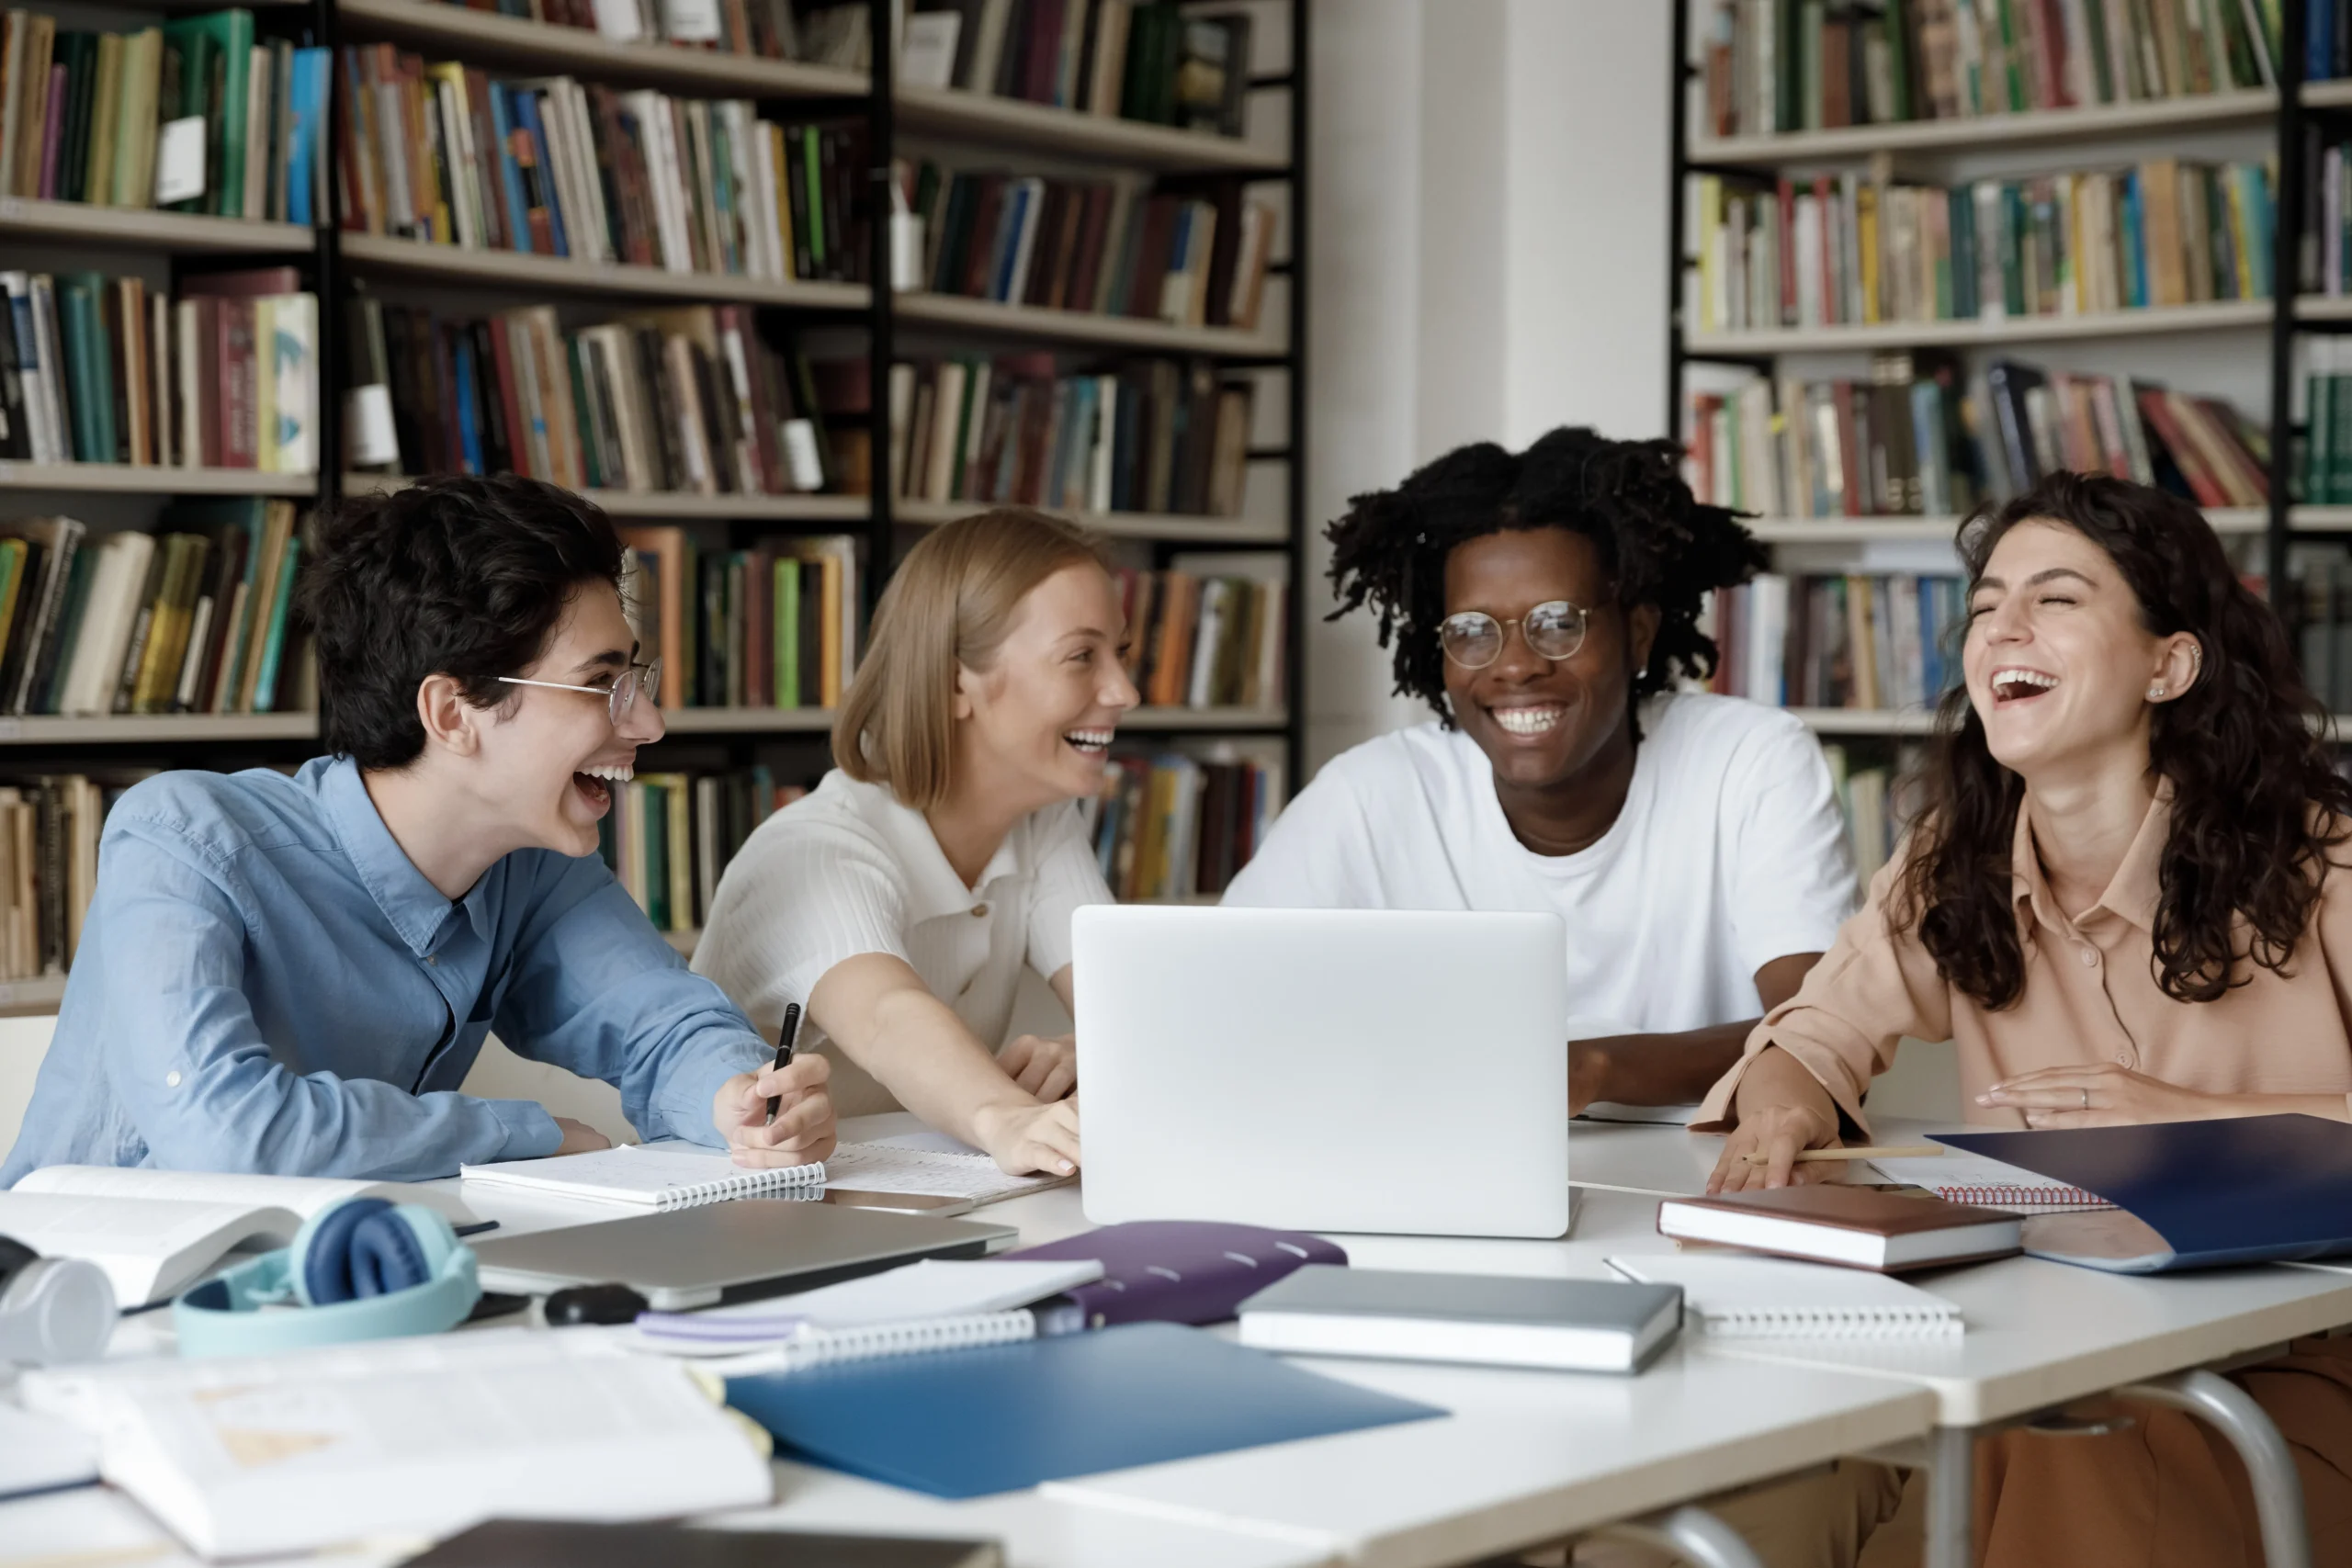 Os grupos de estudos são muito positivos a troca de conhecimentos. Imagem: Shutterstock